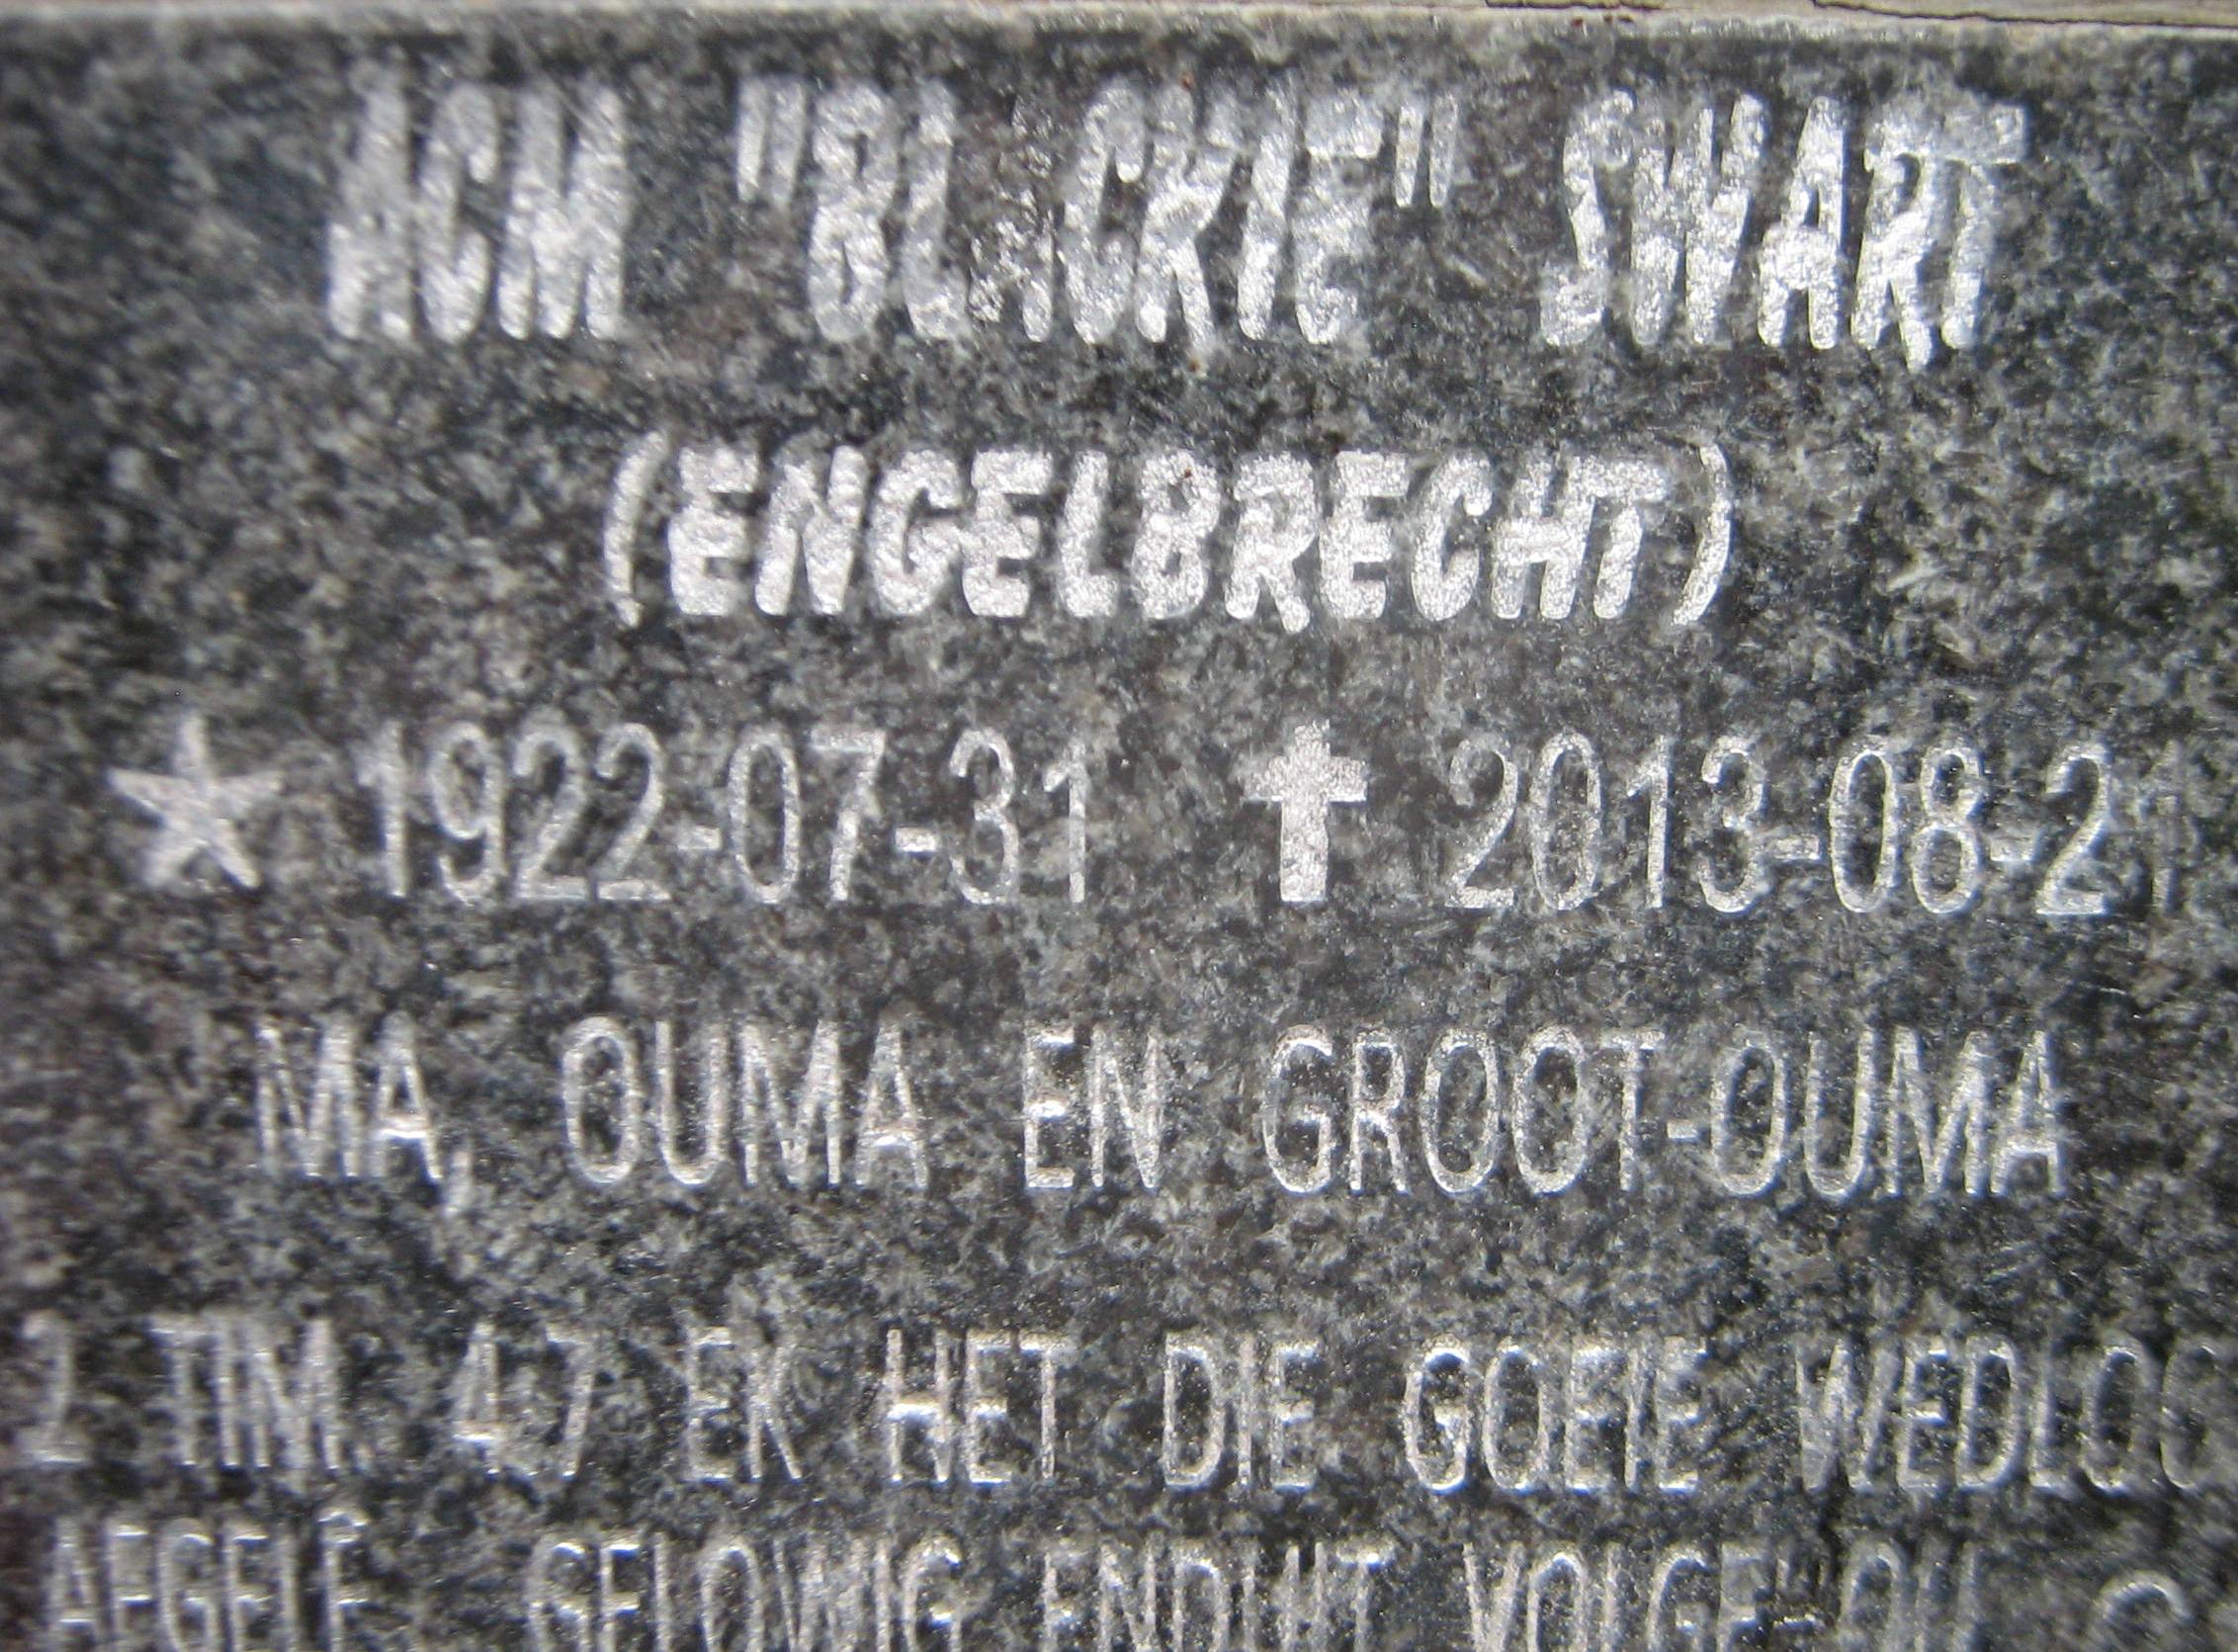 SWART A.C.M., nee ENGELBRECHT 1922-2013